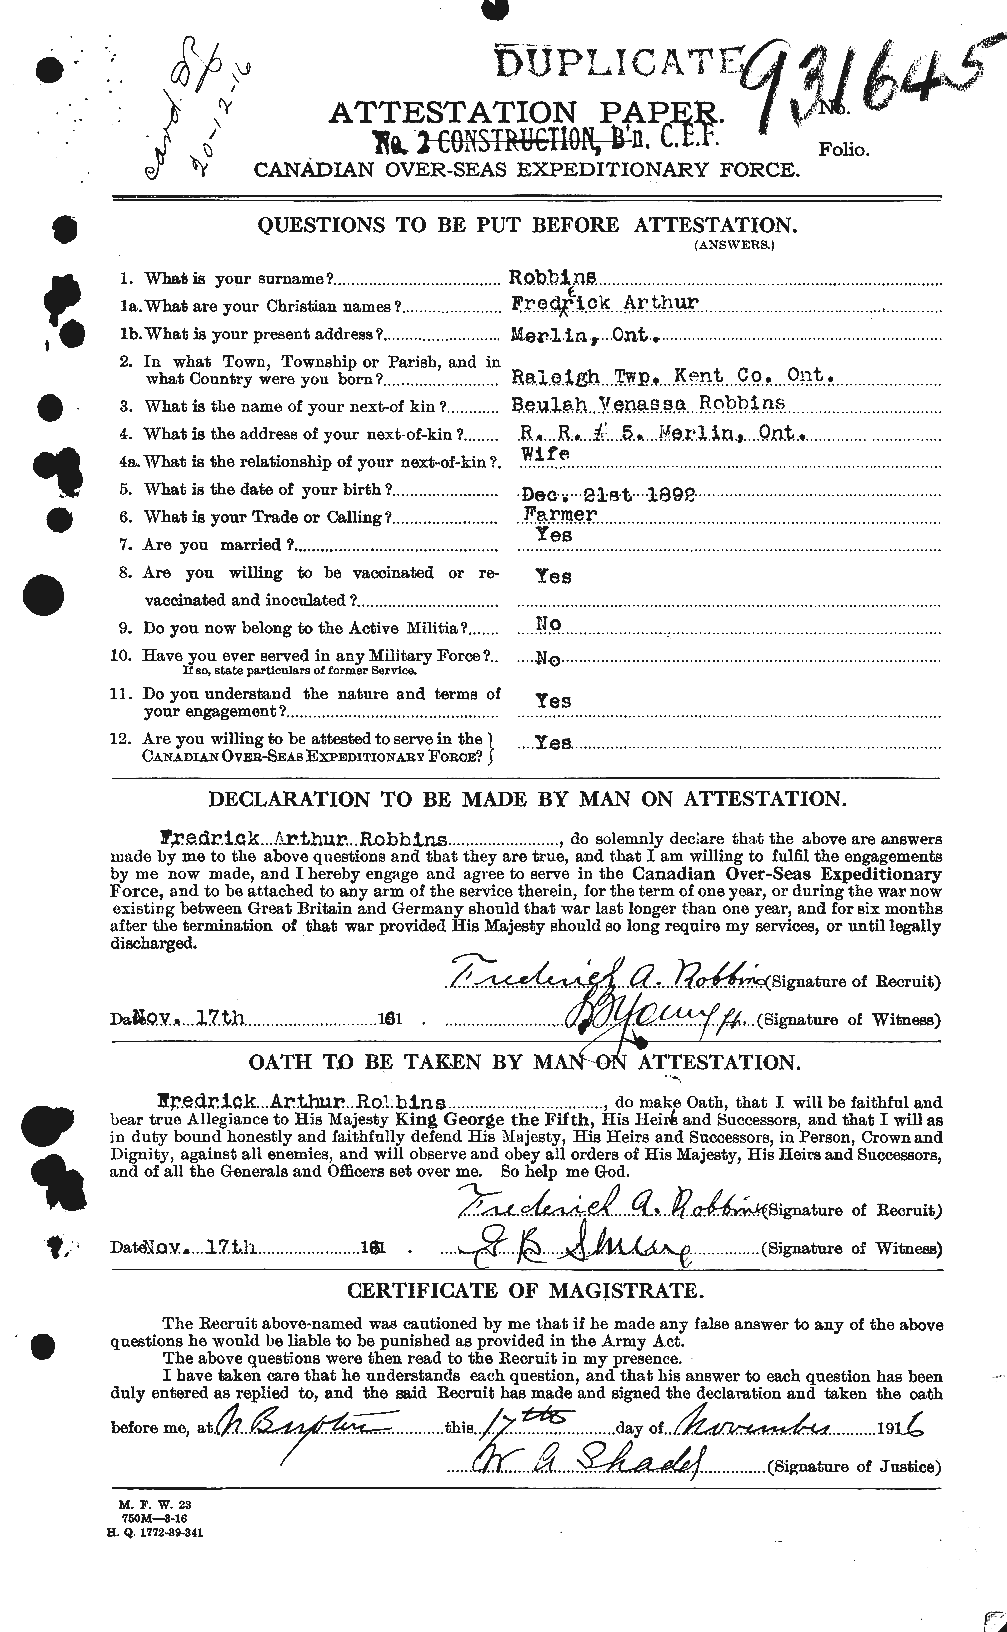 Dossiers du Personnel de la Première Guerre mondiale - CEC 603789a